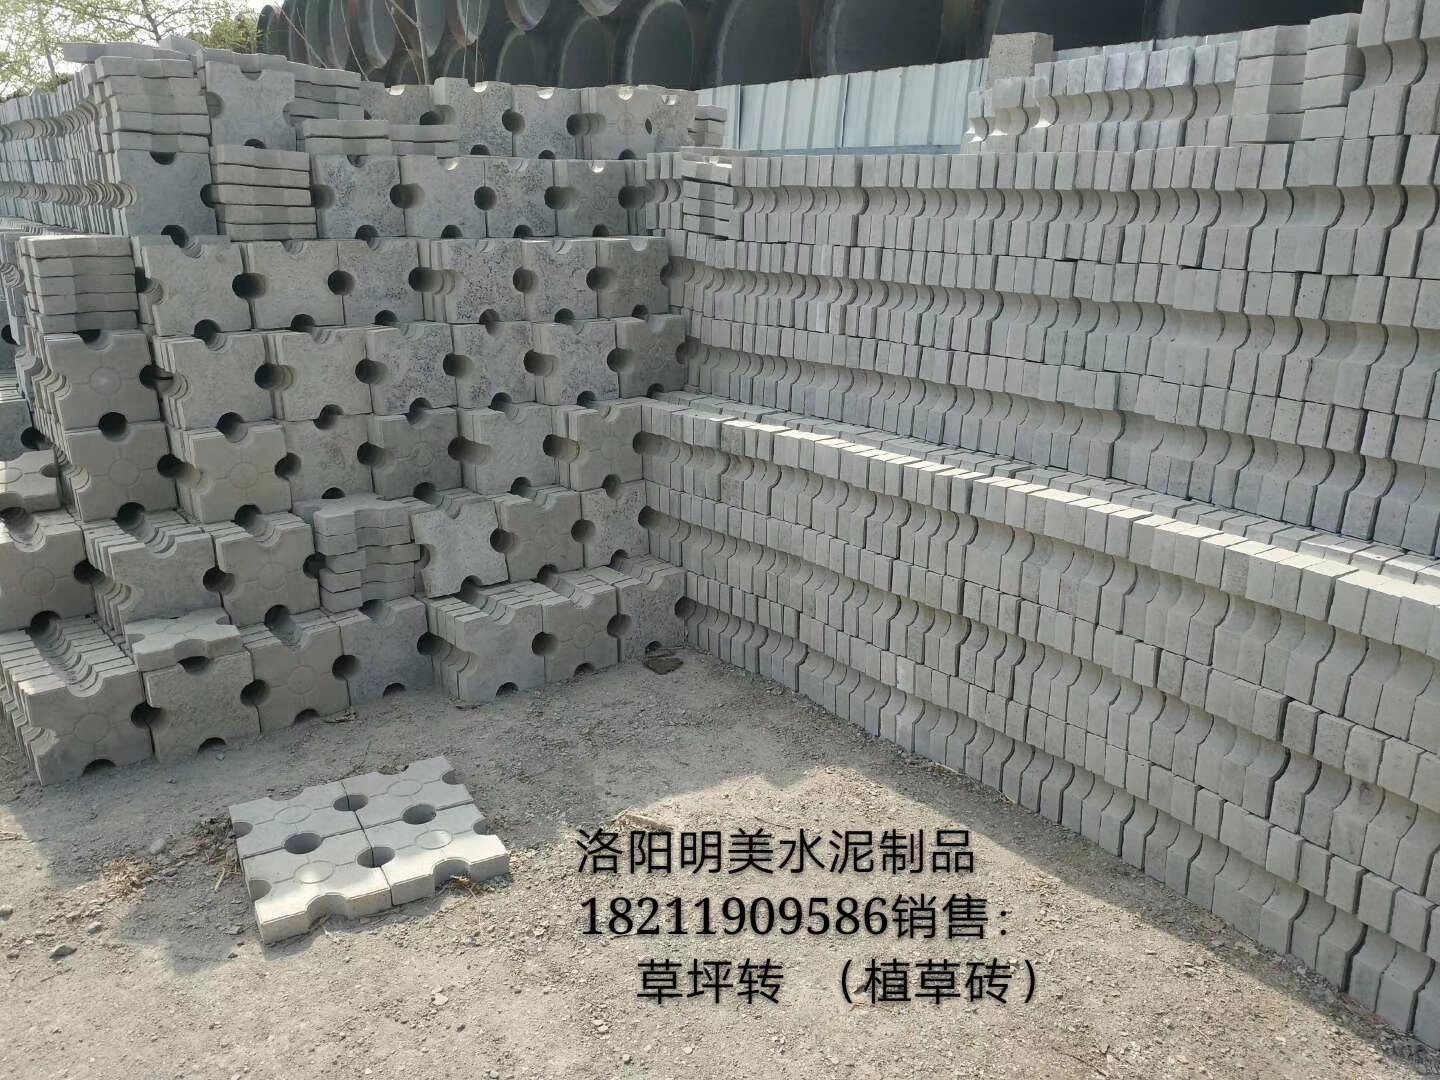 河南洛阳钢筋水泥制品生产厂家直销报价 供应商价格